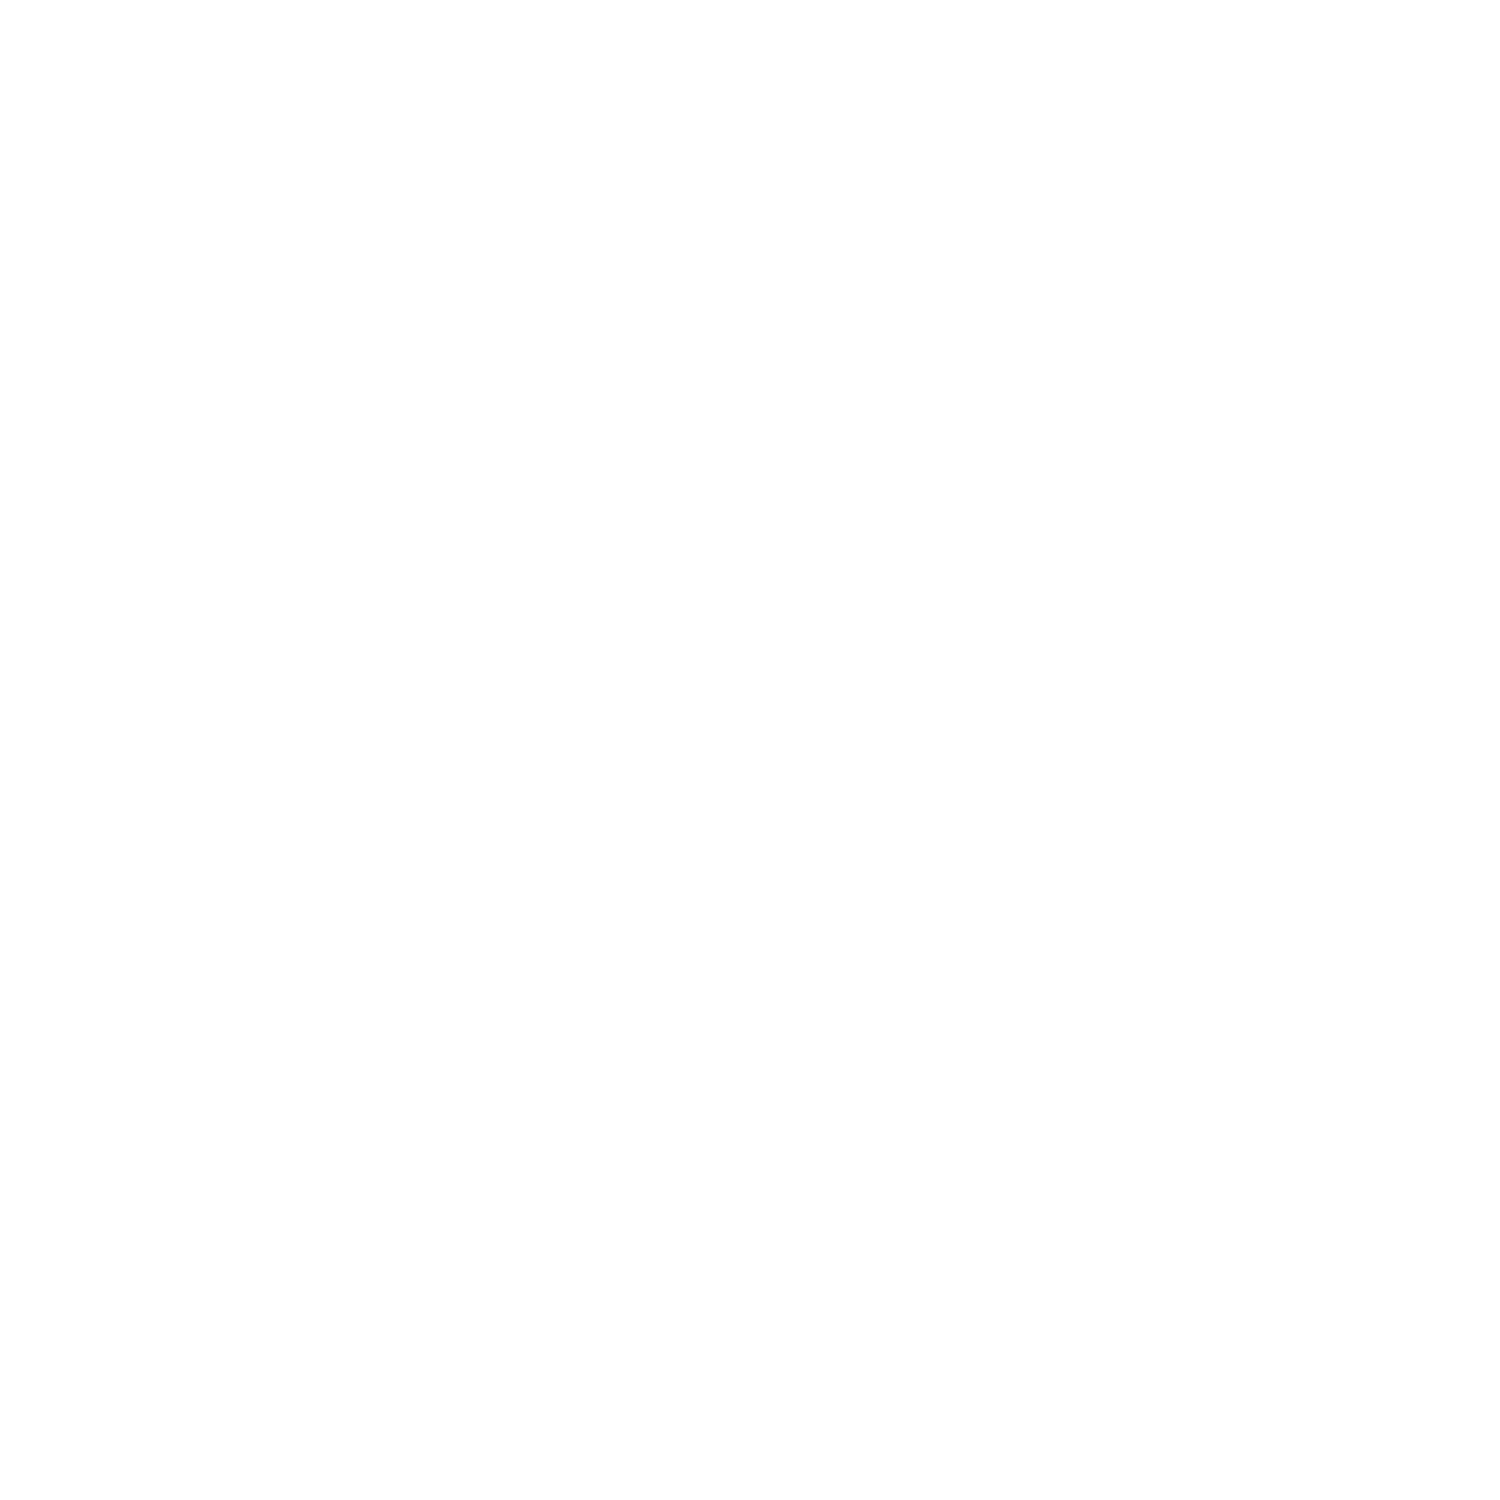 Basileians